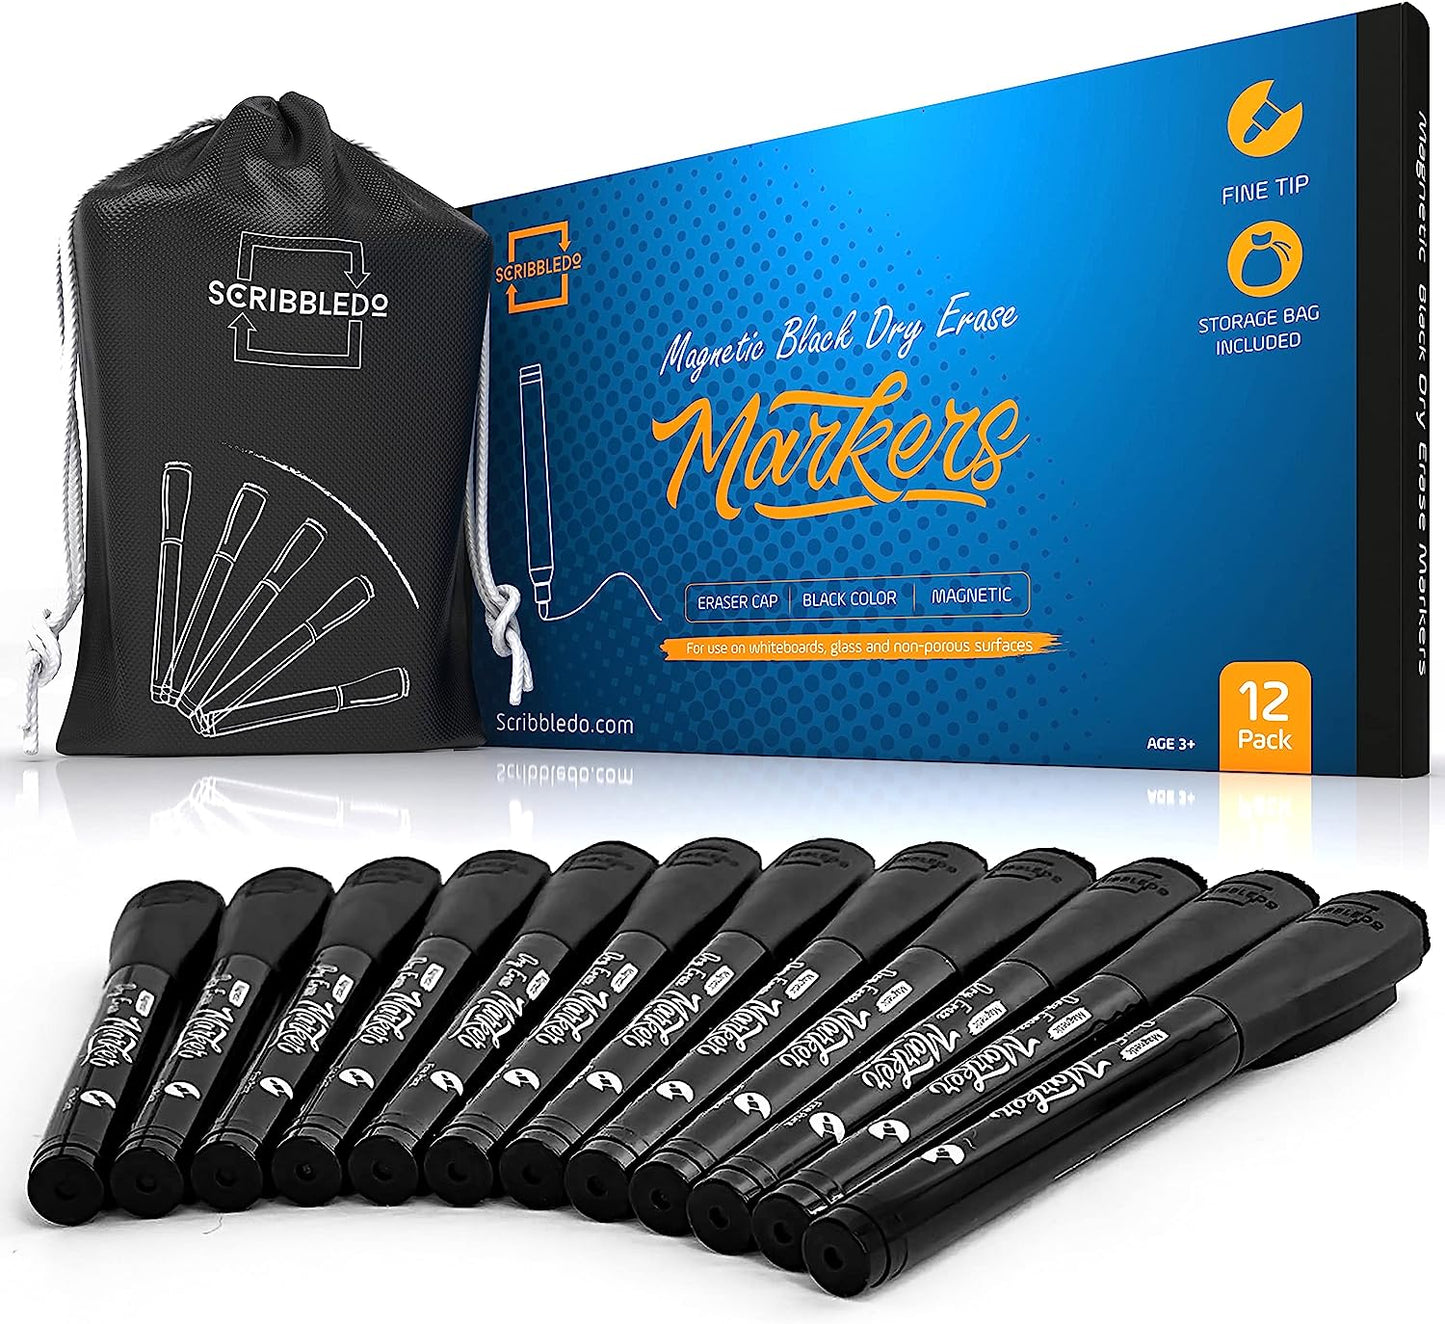 Magnetic Dry Erase Black Marker - 12 Pack, Extra Fine Tip